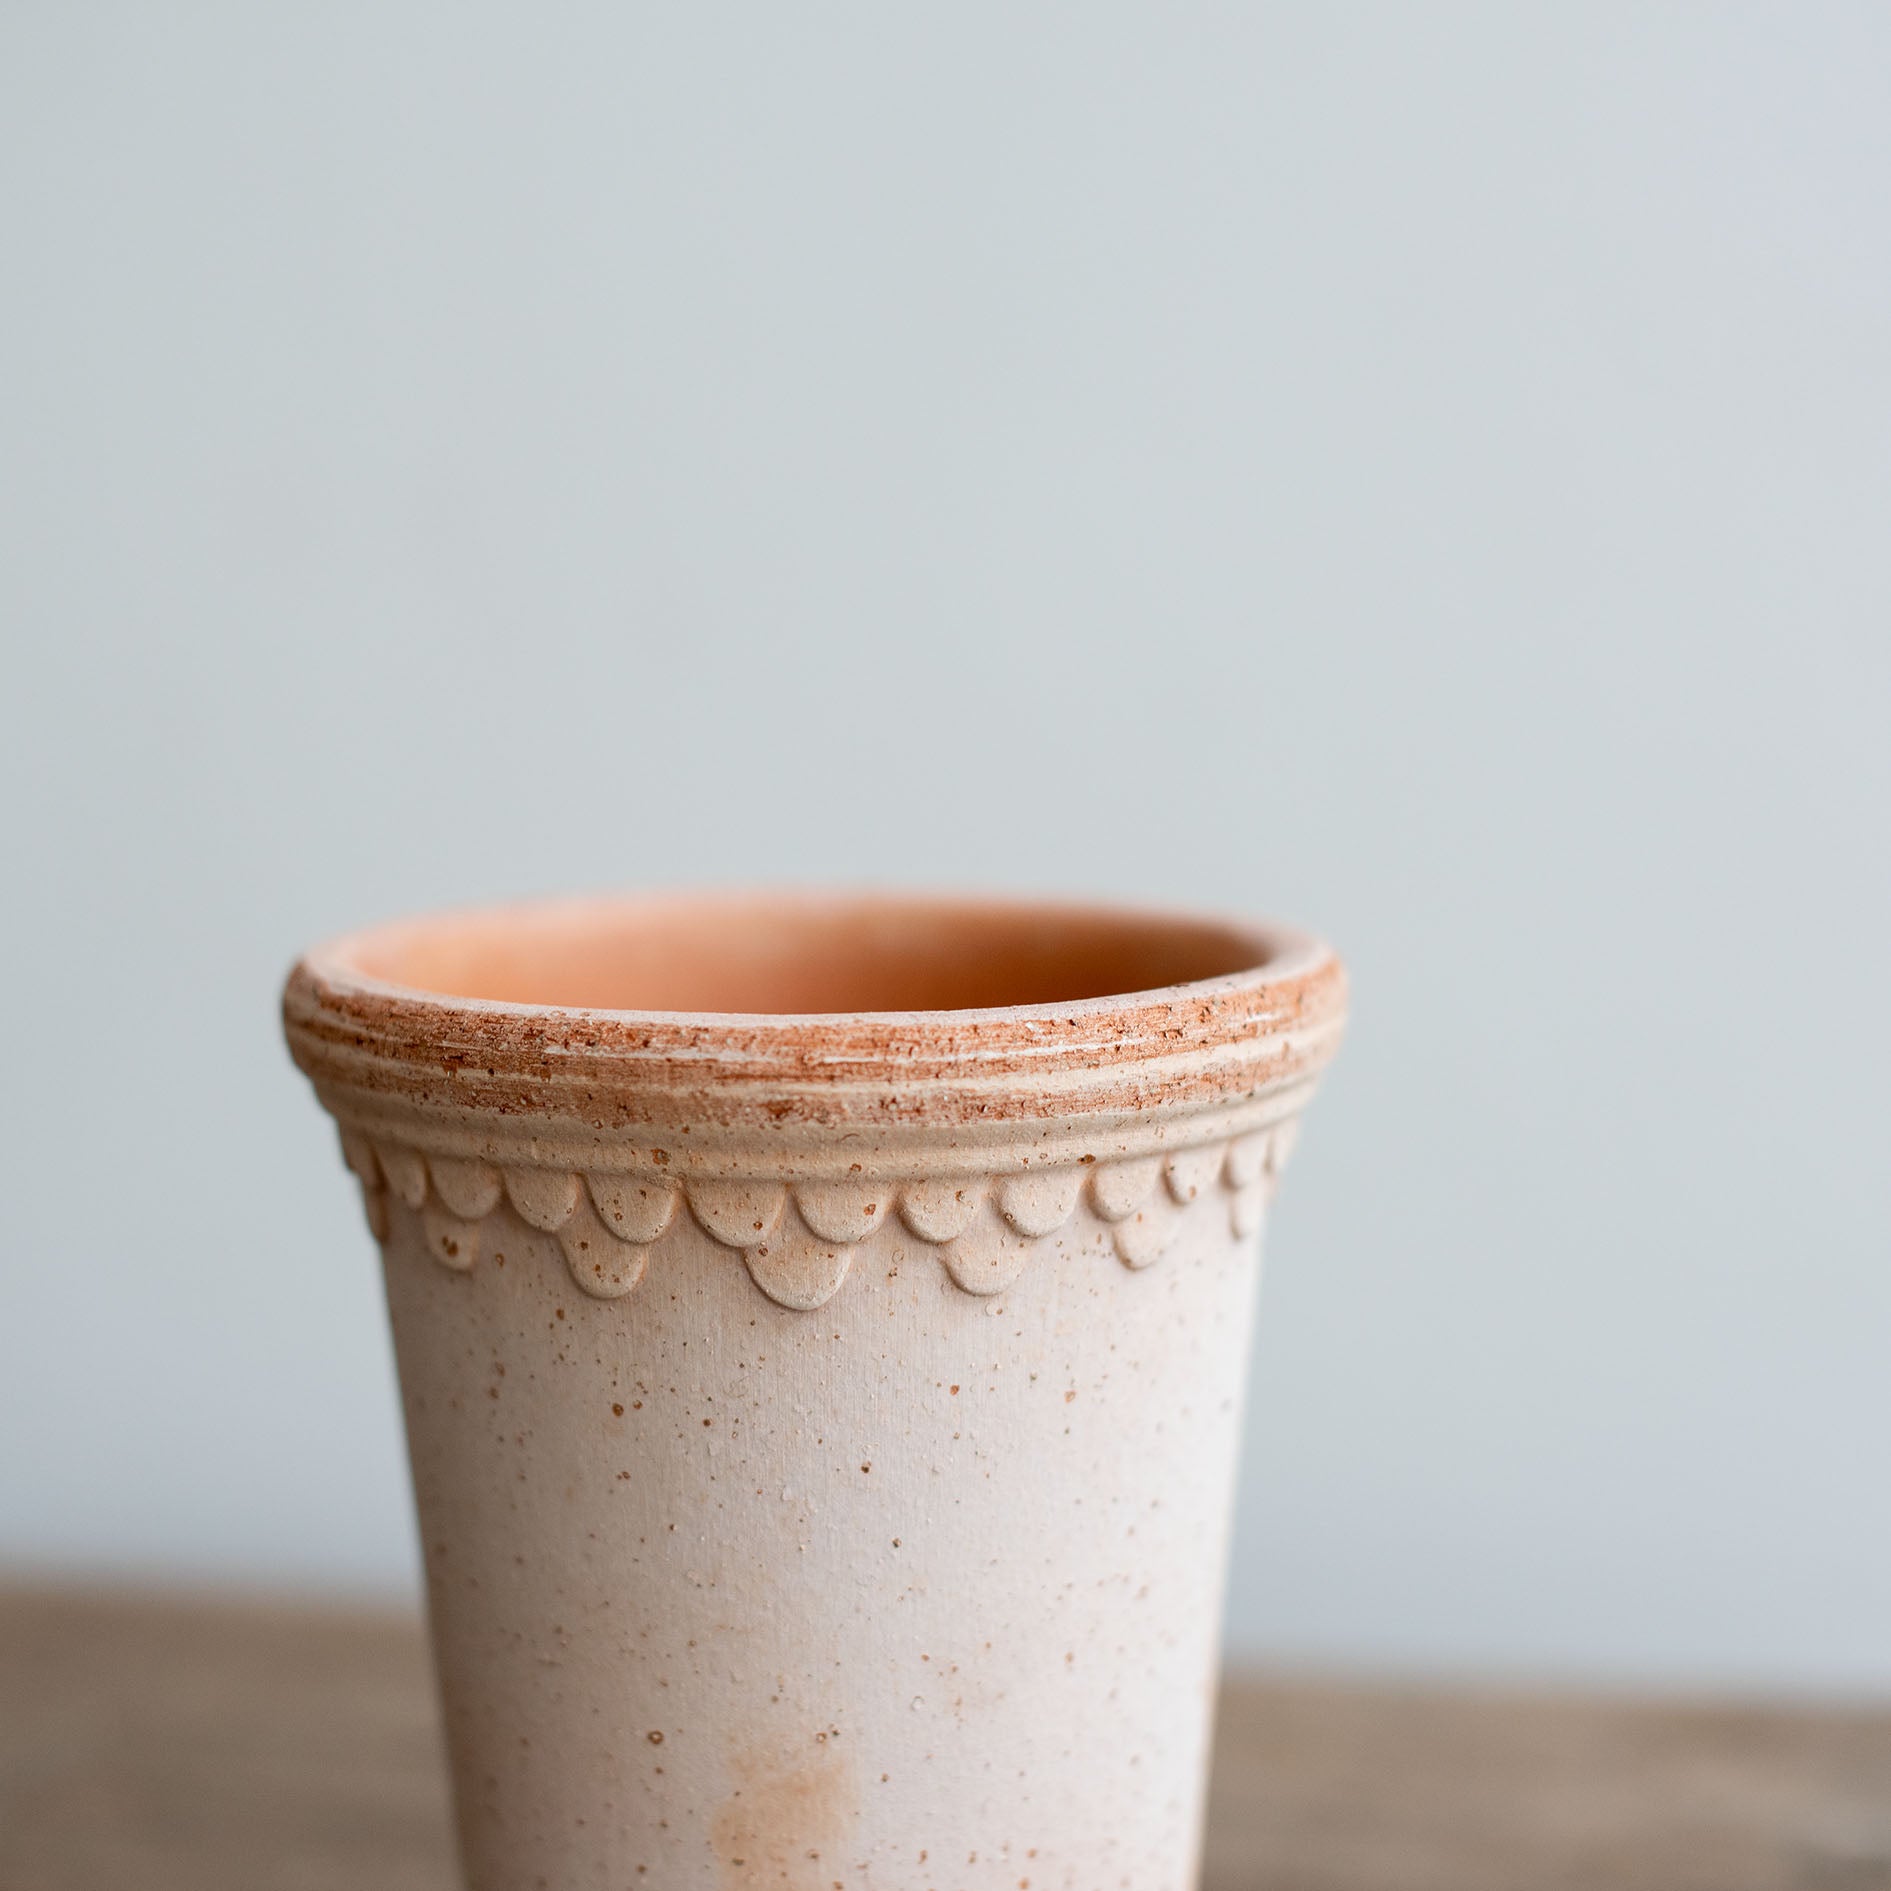 Nahaufnahme von einem rosa Keramik Ton Blumentopf mit Untersetzer. Kopenhagener Topf, der auch als Schlosstopf von Bergs bekannt ist, hergestellt von Bergs Potter.